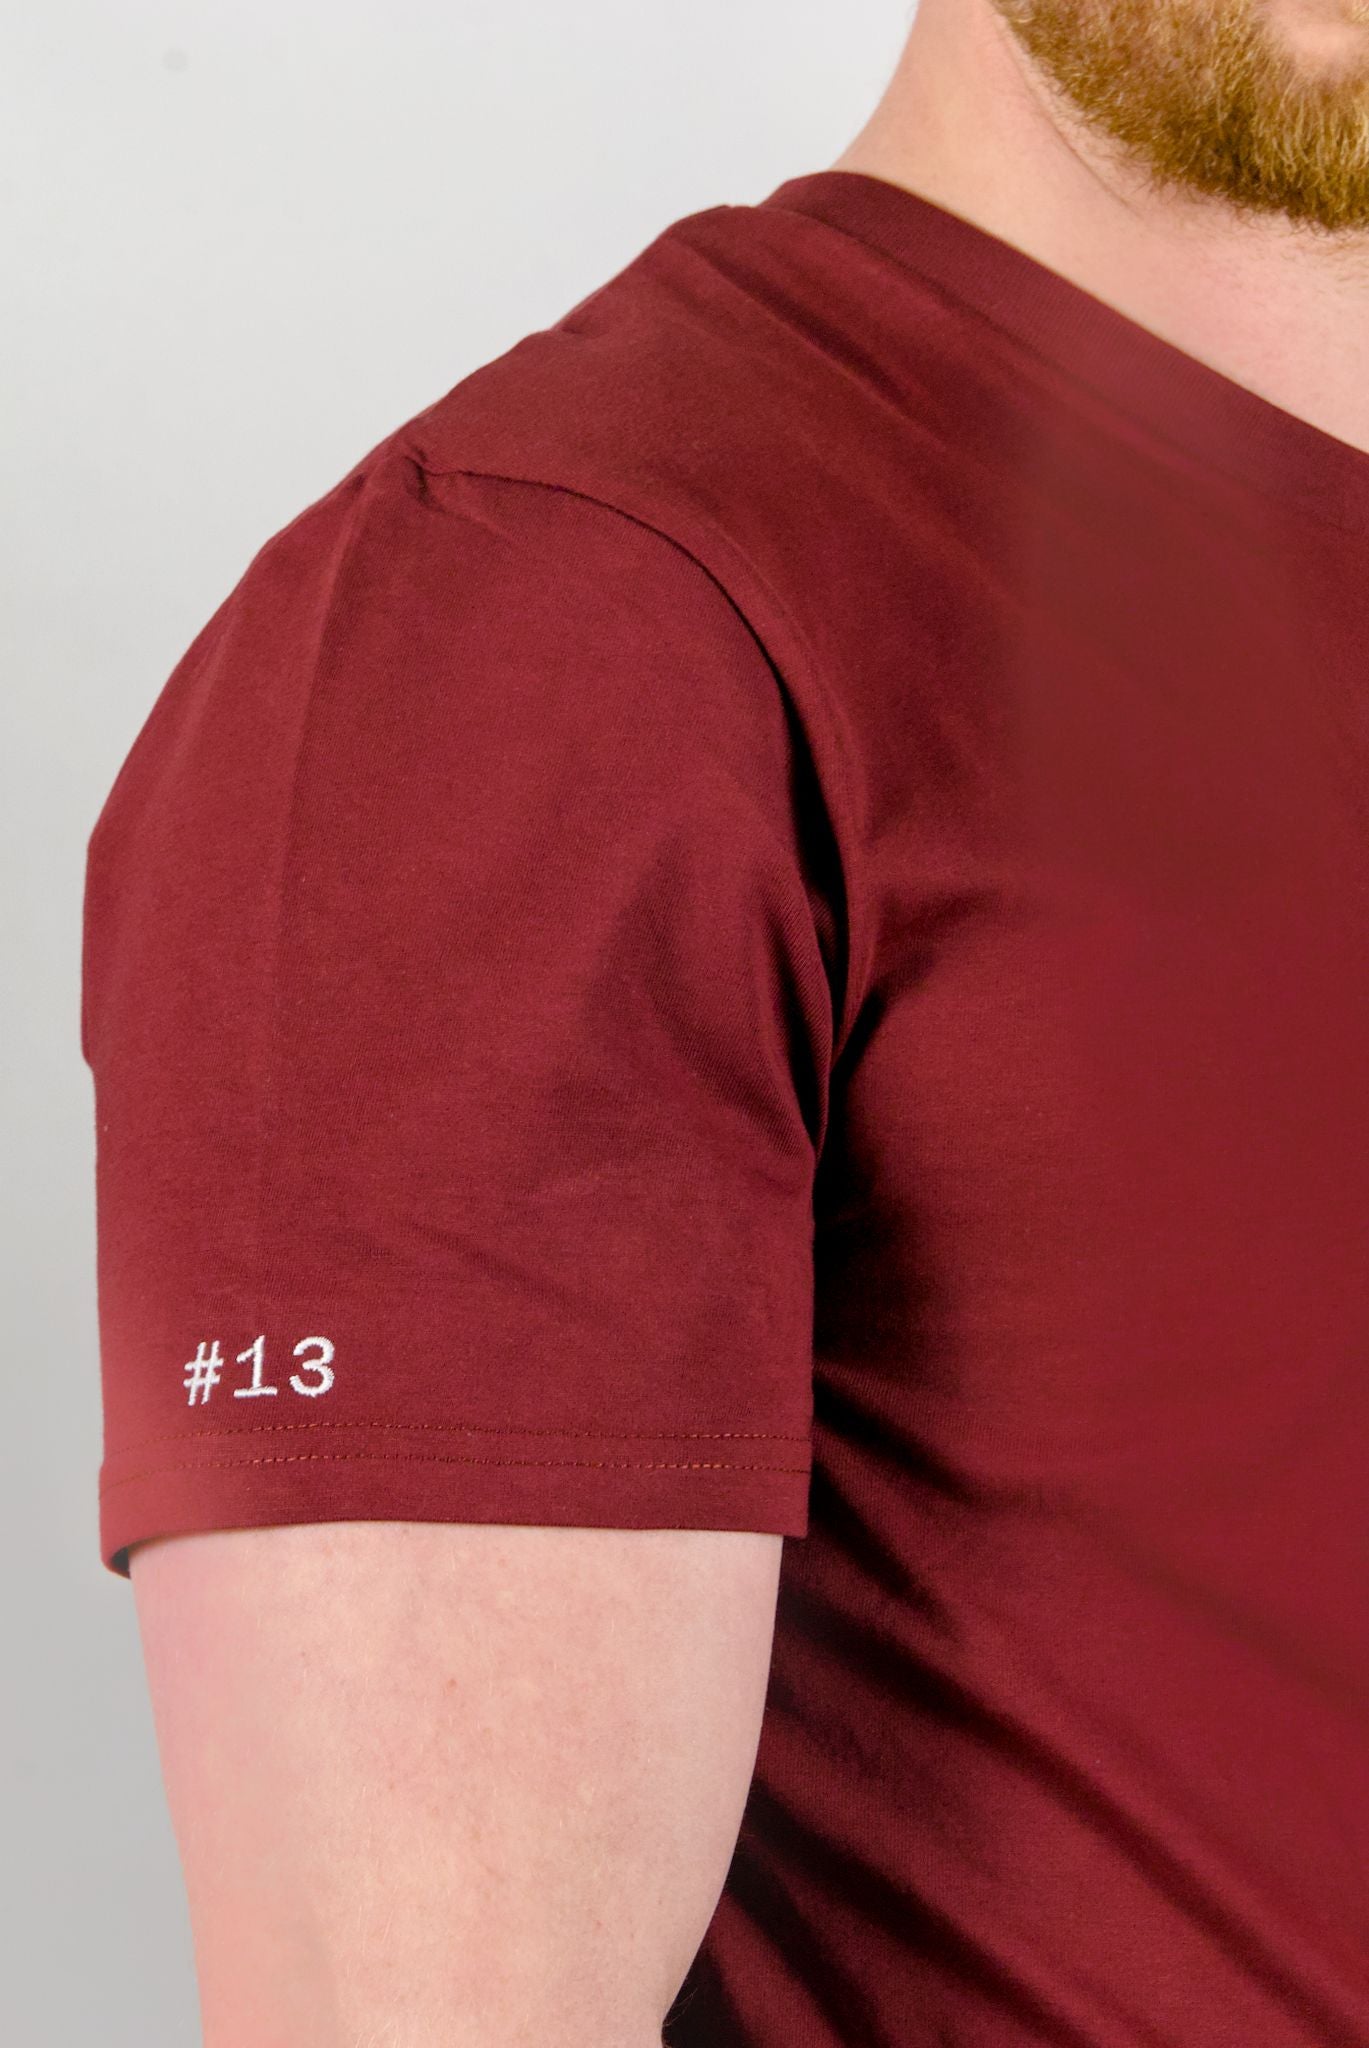 Das Handball T-Shirt mit Spielernummer personalisierbar